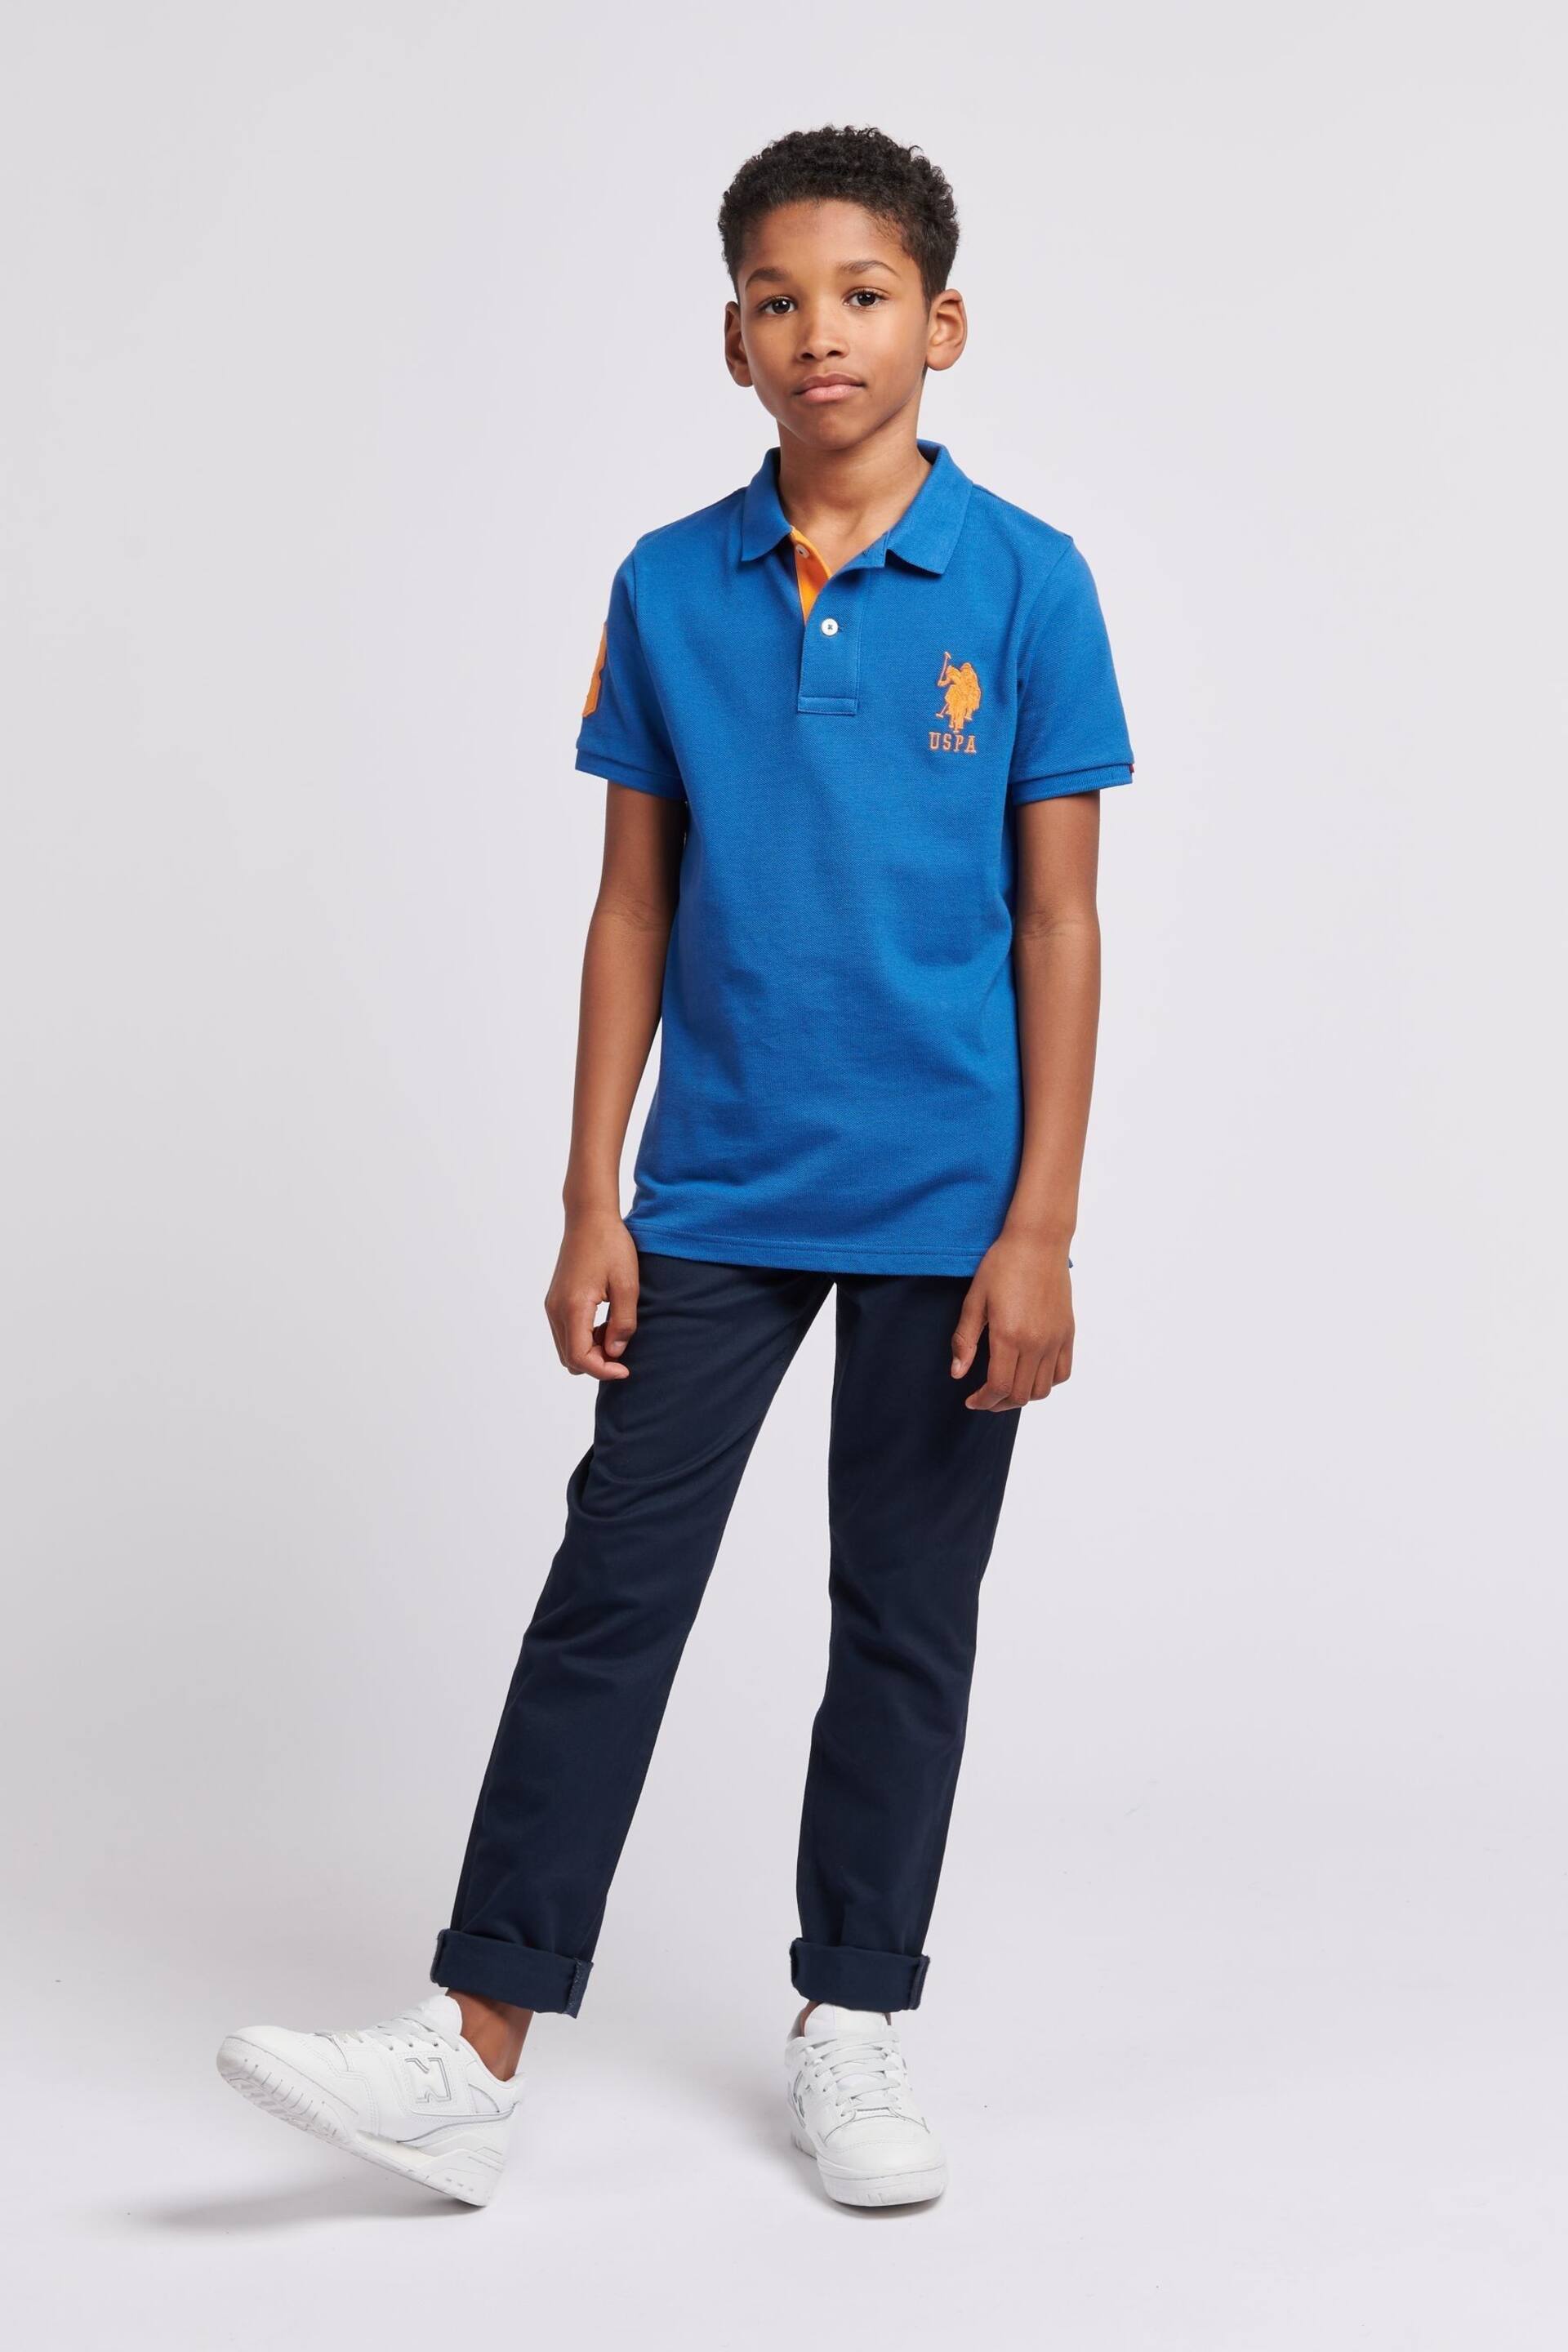 U.S. Polo Assn. Boys Blue Player 3 Pique Polo Shirt - Image 3 of 7